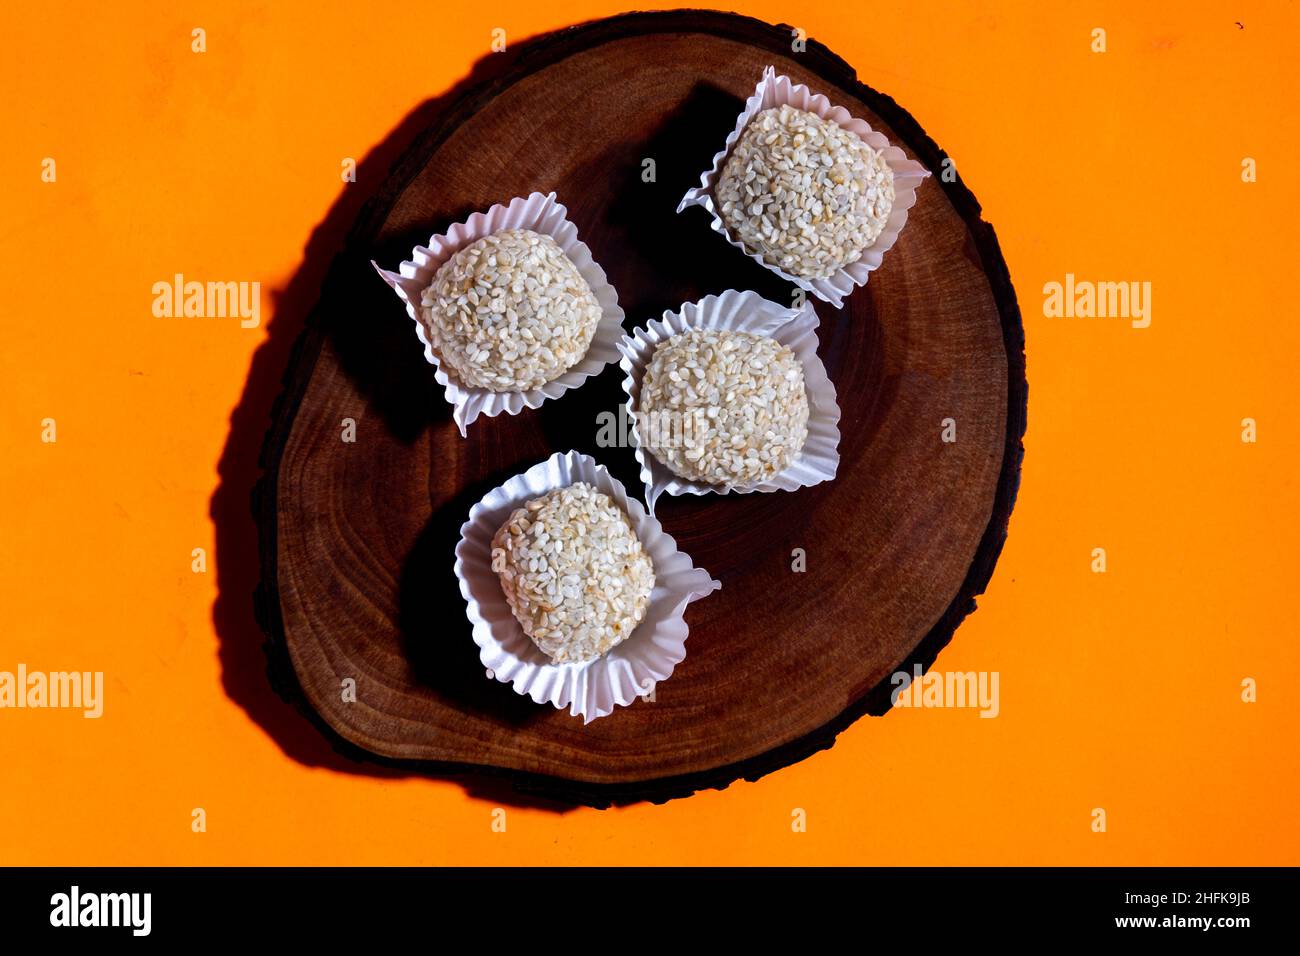 Indonesischer Mochi-Kuchen, Adaption japanischer Mochi. Stockfoto